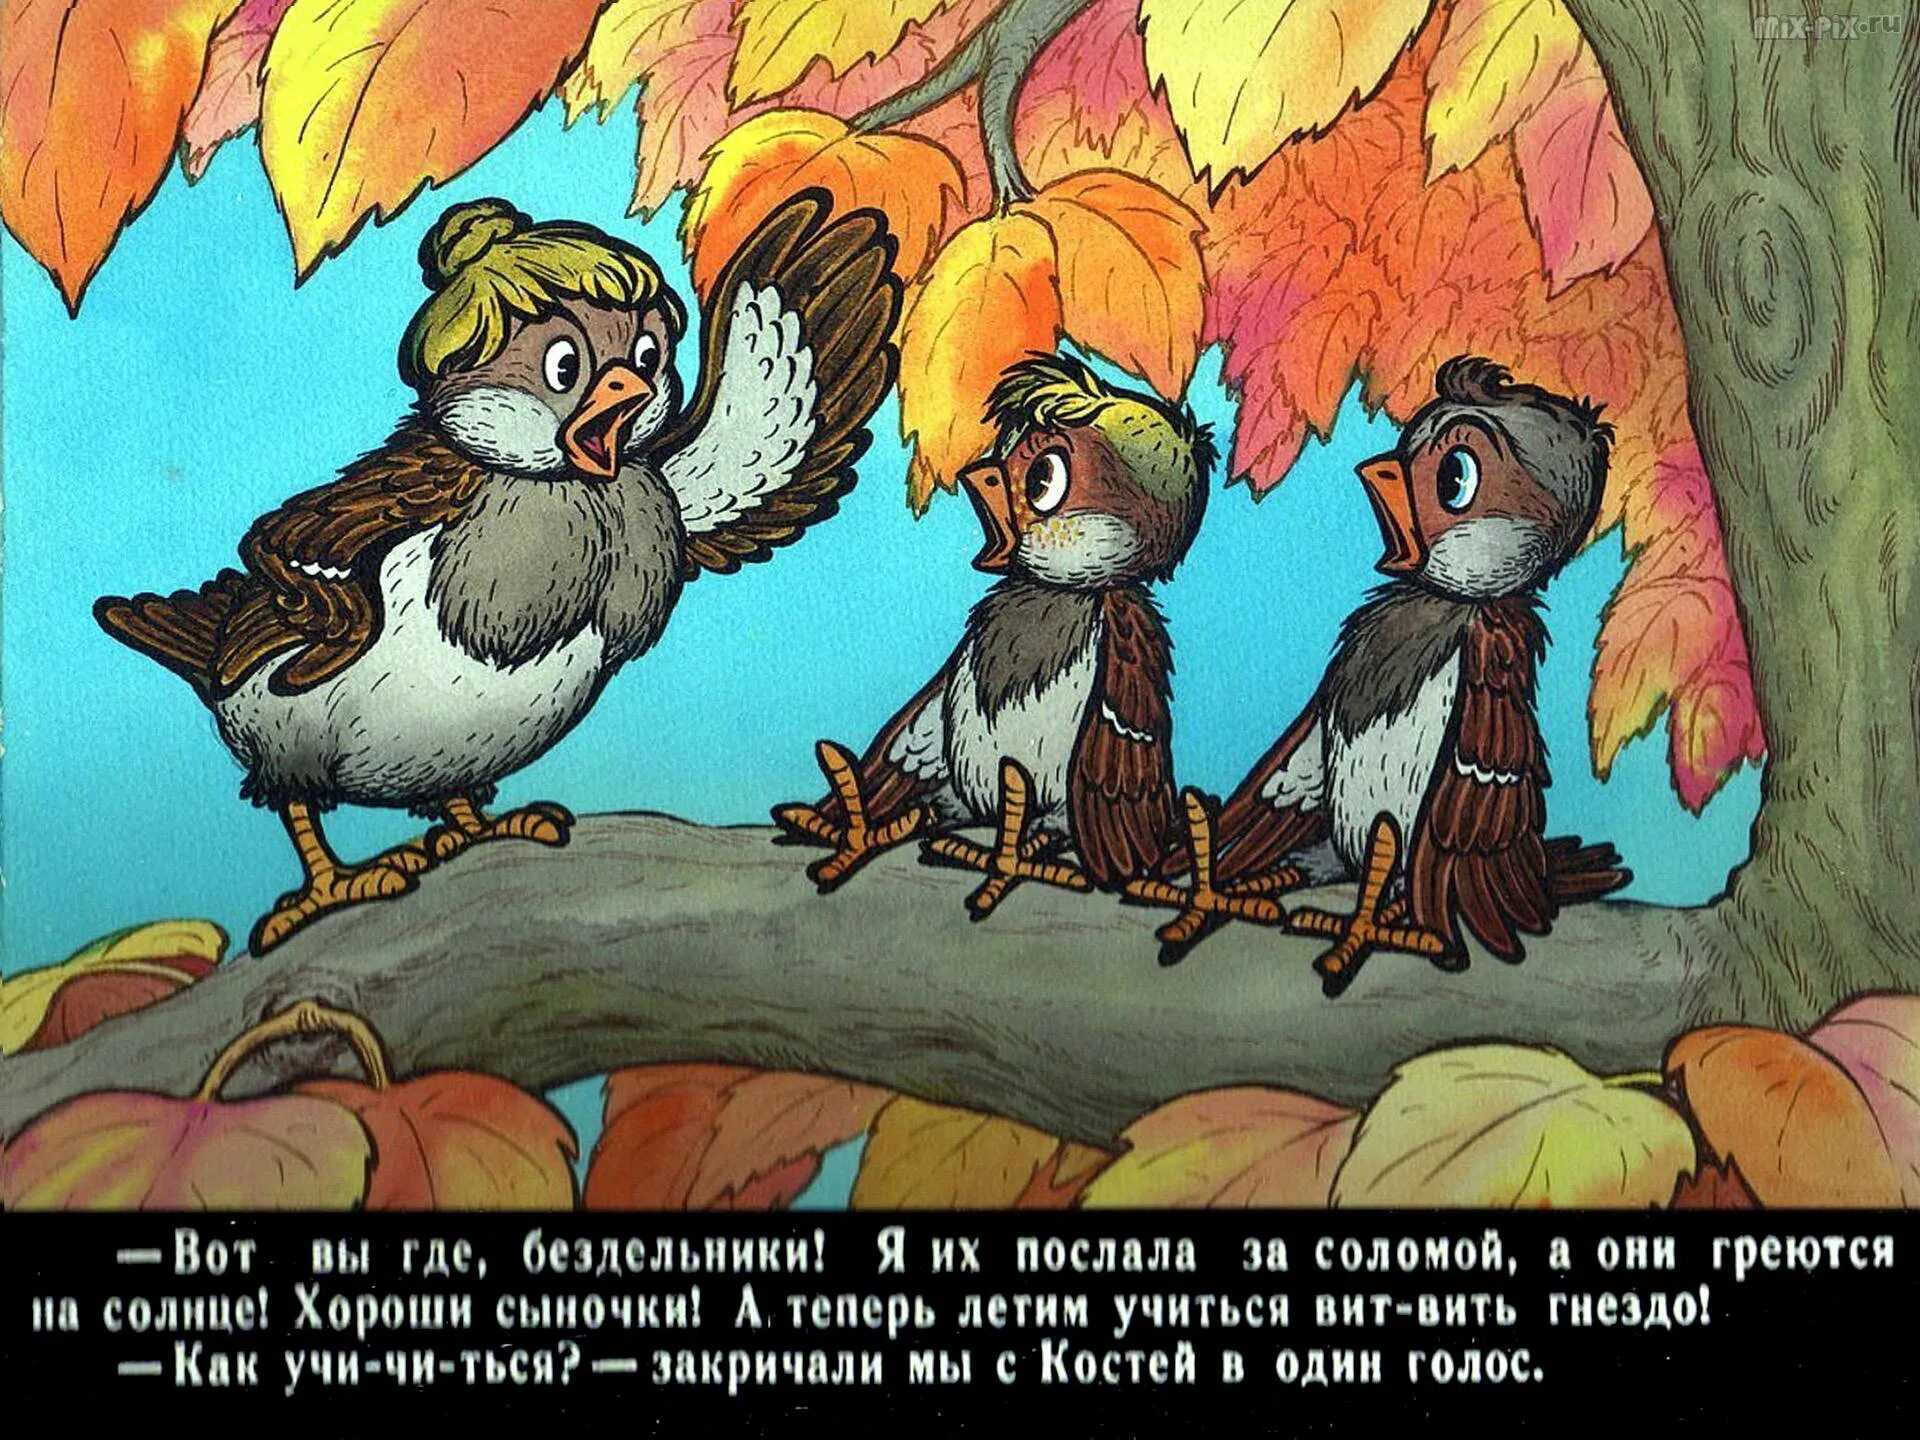 Повесть будь человеком. Медведев в. "Баранкин, будь человеком!". Баранкин будь человеком иллюстрации. Иллюстрация к сказке Баранкин будь человеком. Медведев Баранкин будь человеком мультфильм.